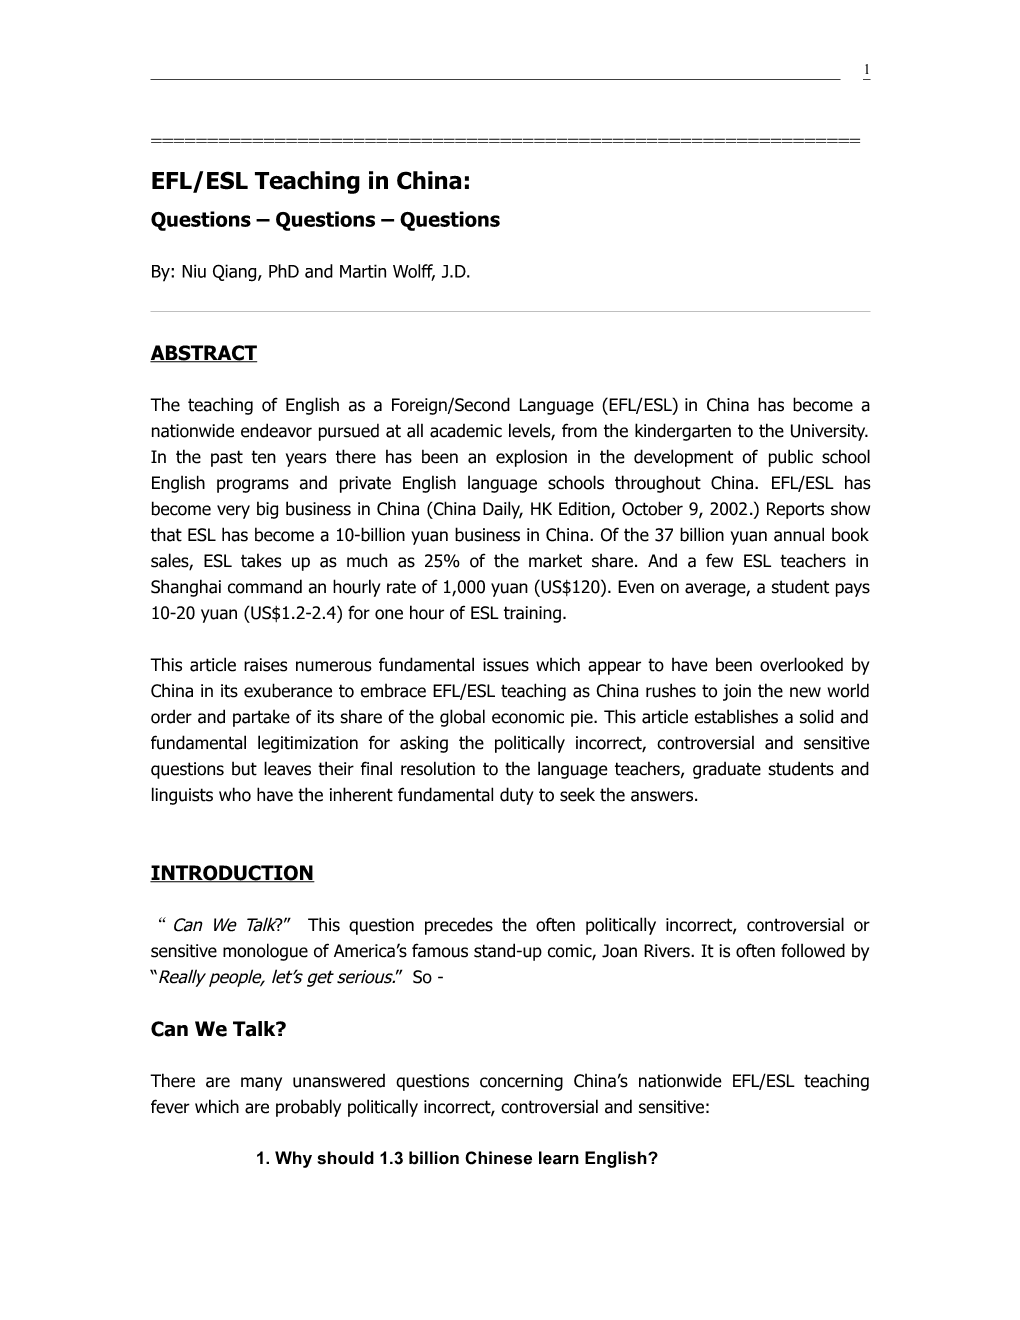 EFL/ESL Teaching in China